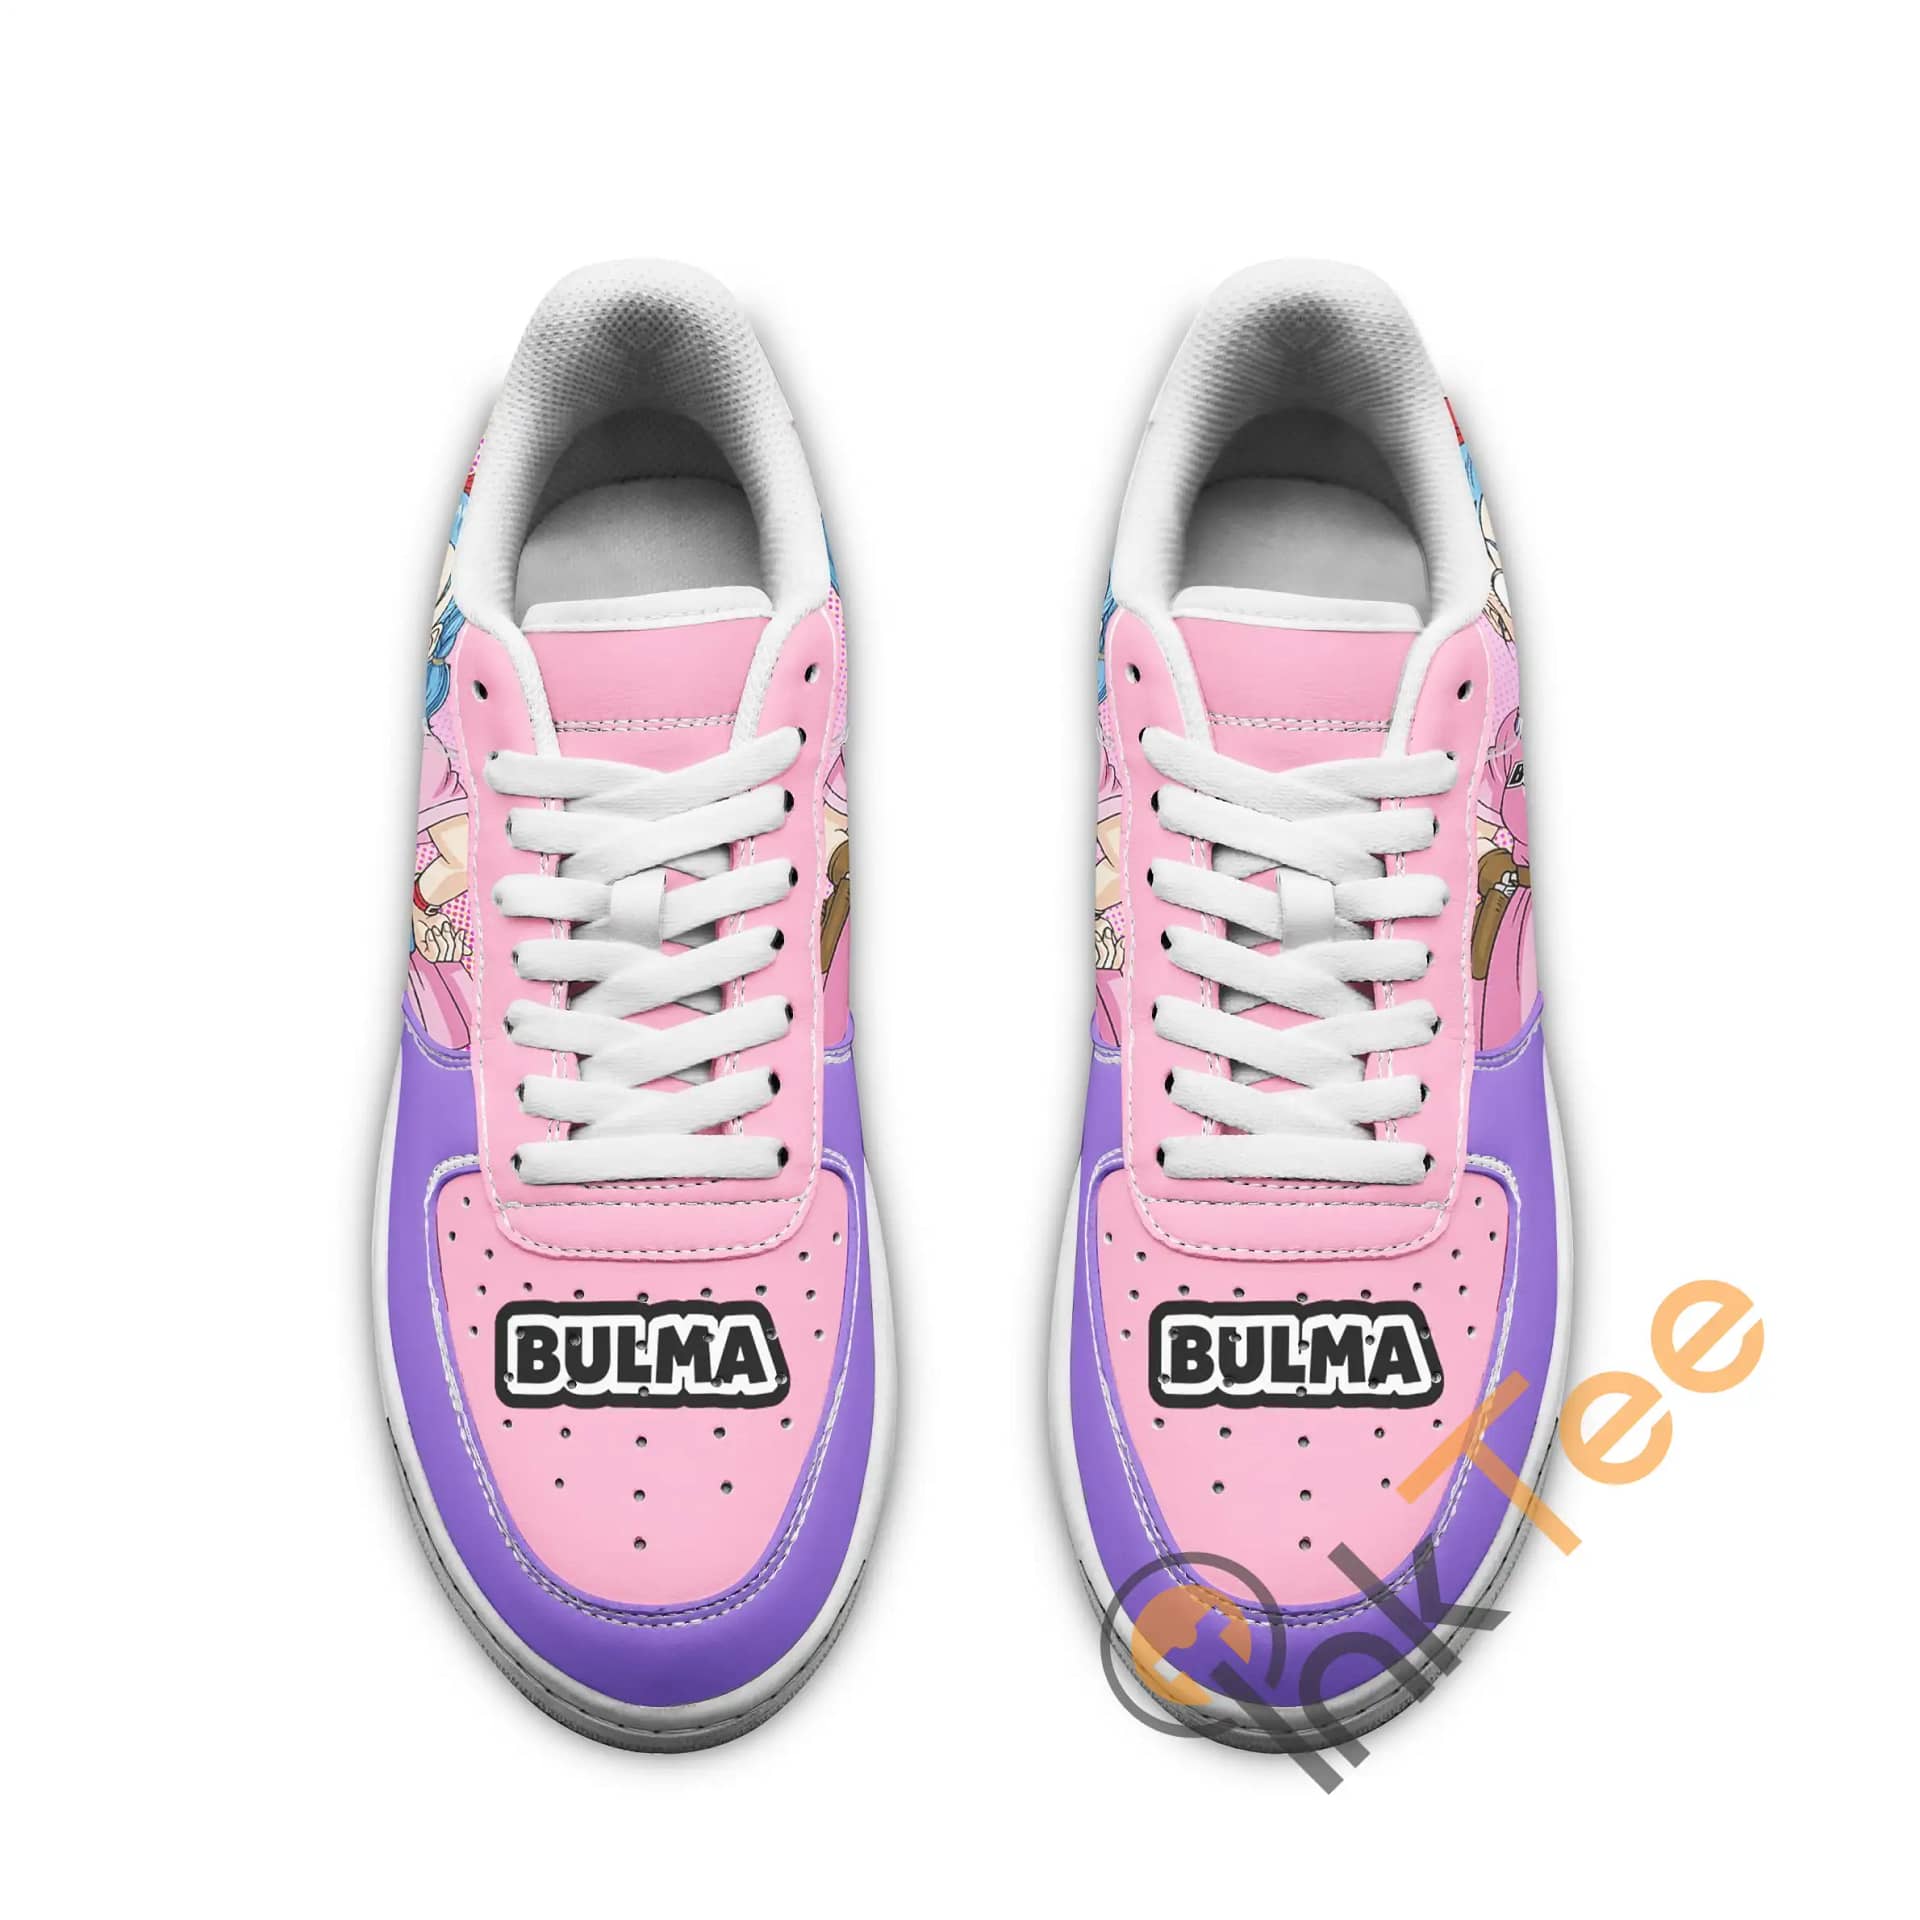 Bulma Dragon Ball Z Anime Fan Gift Amazon Nike Air Force Shoes